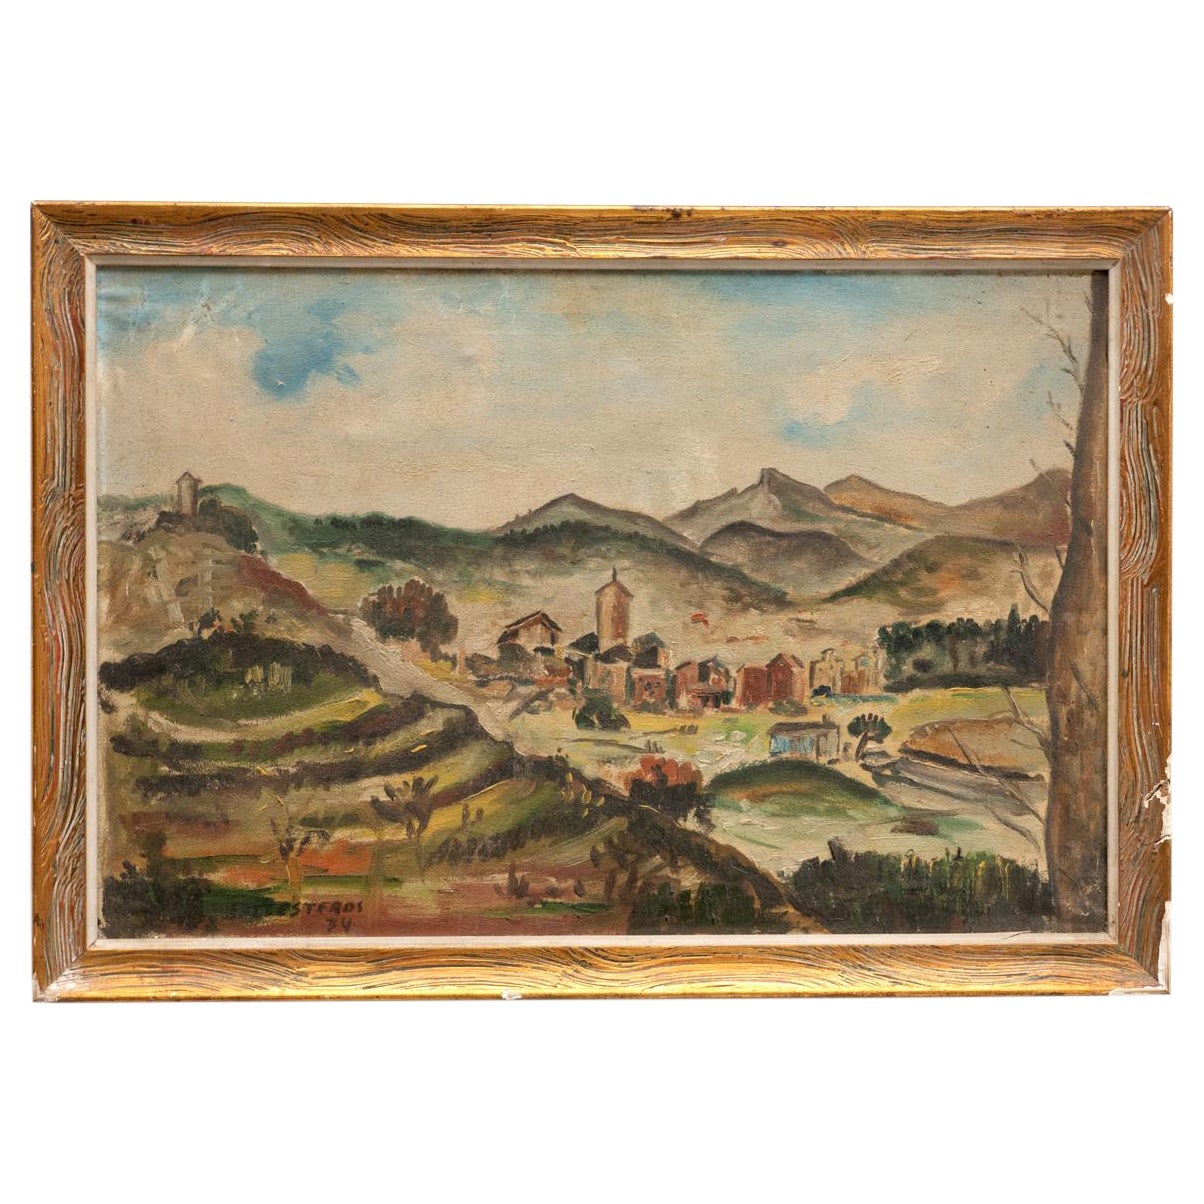 Gemälde von Ballesteros, Öl auf Leinwand, 1974